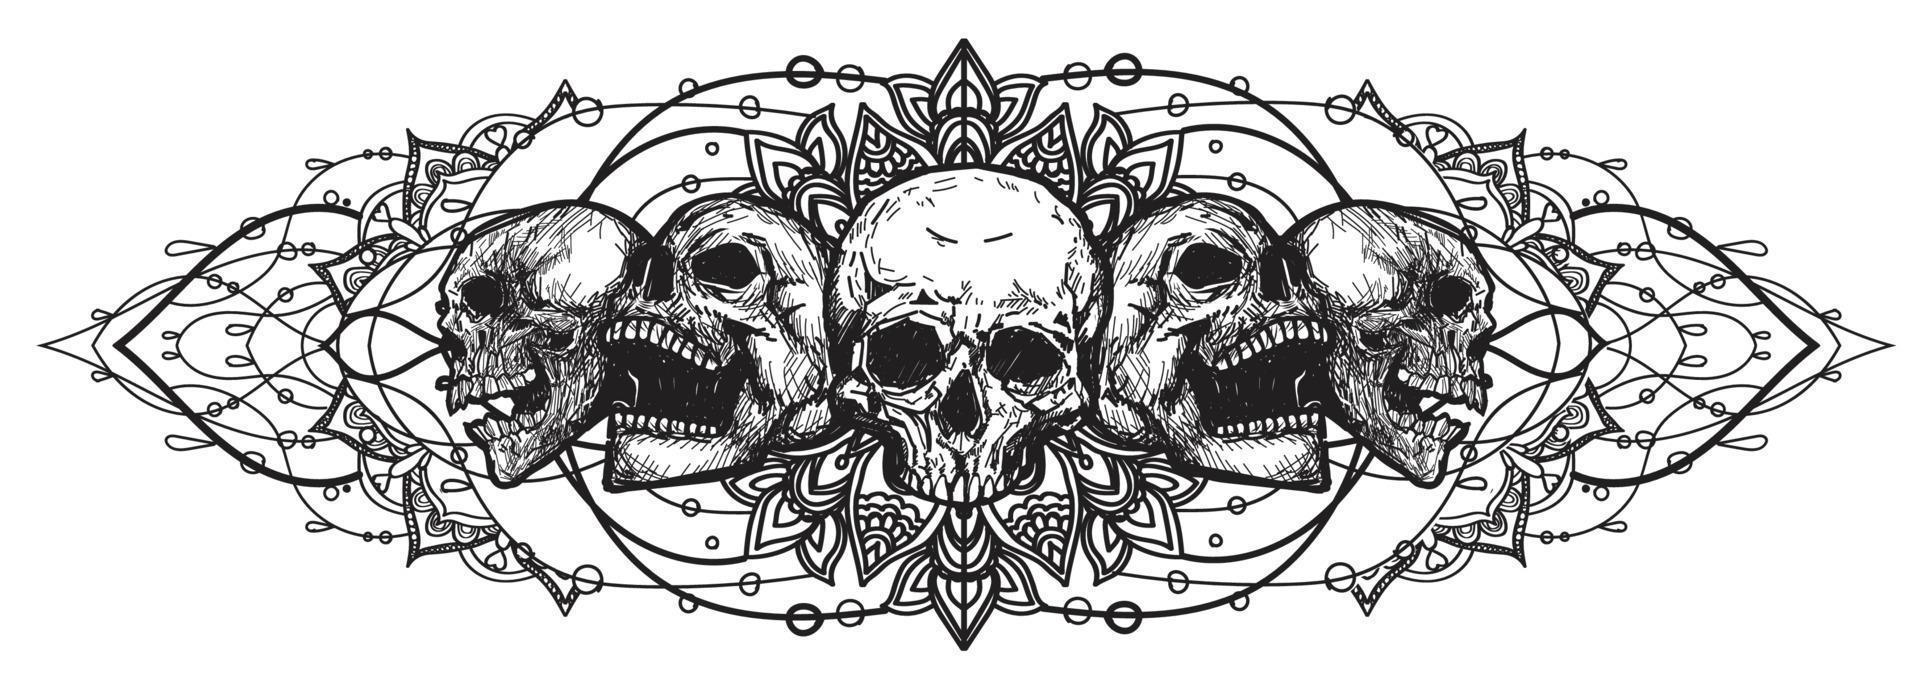 tatuaje arte cráneo bosquejo blanco y negro vector